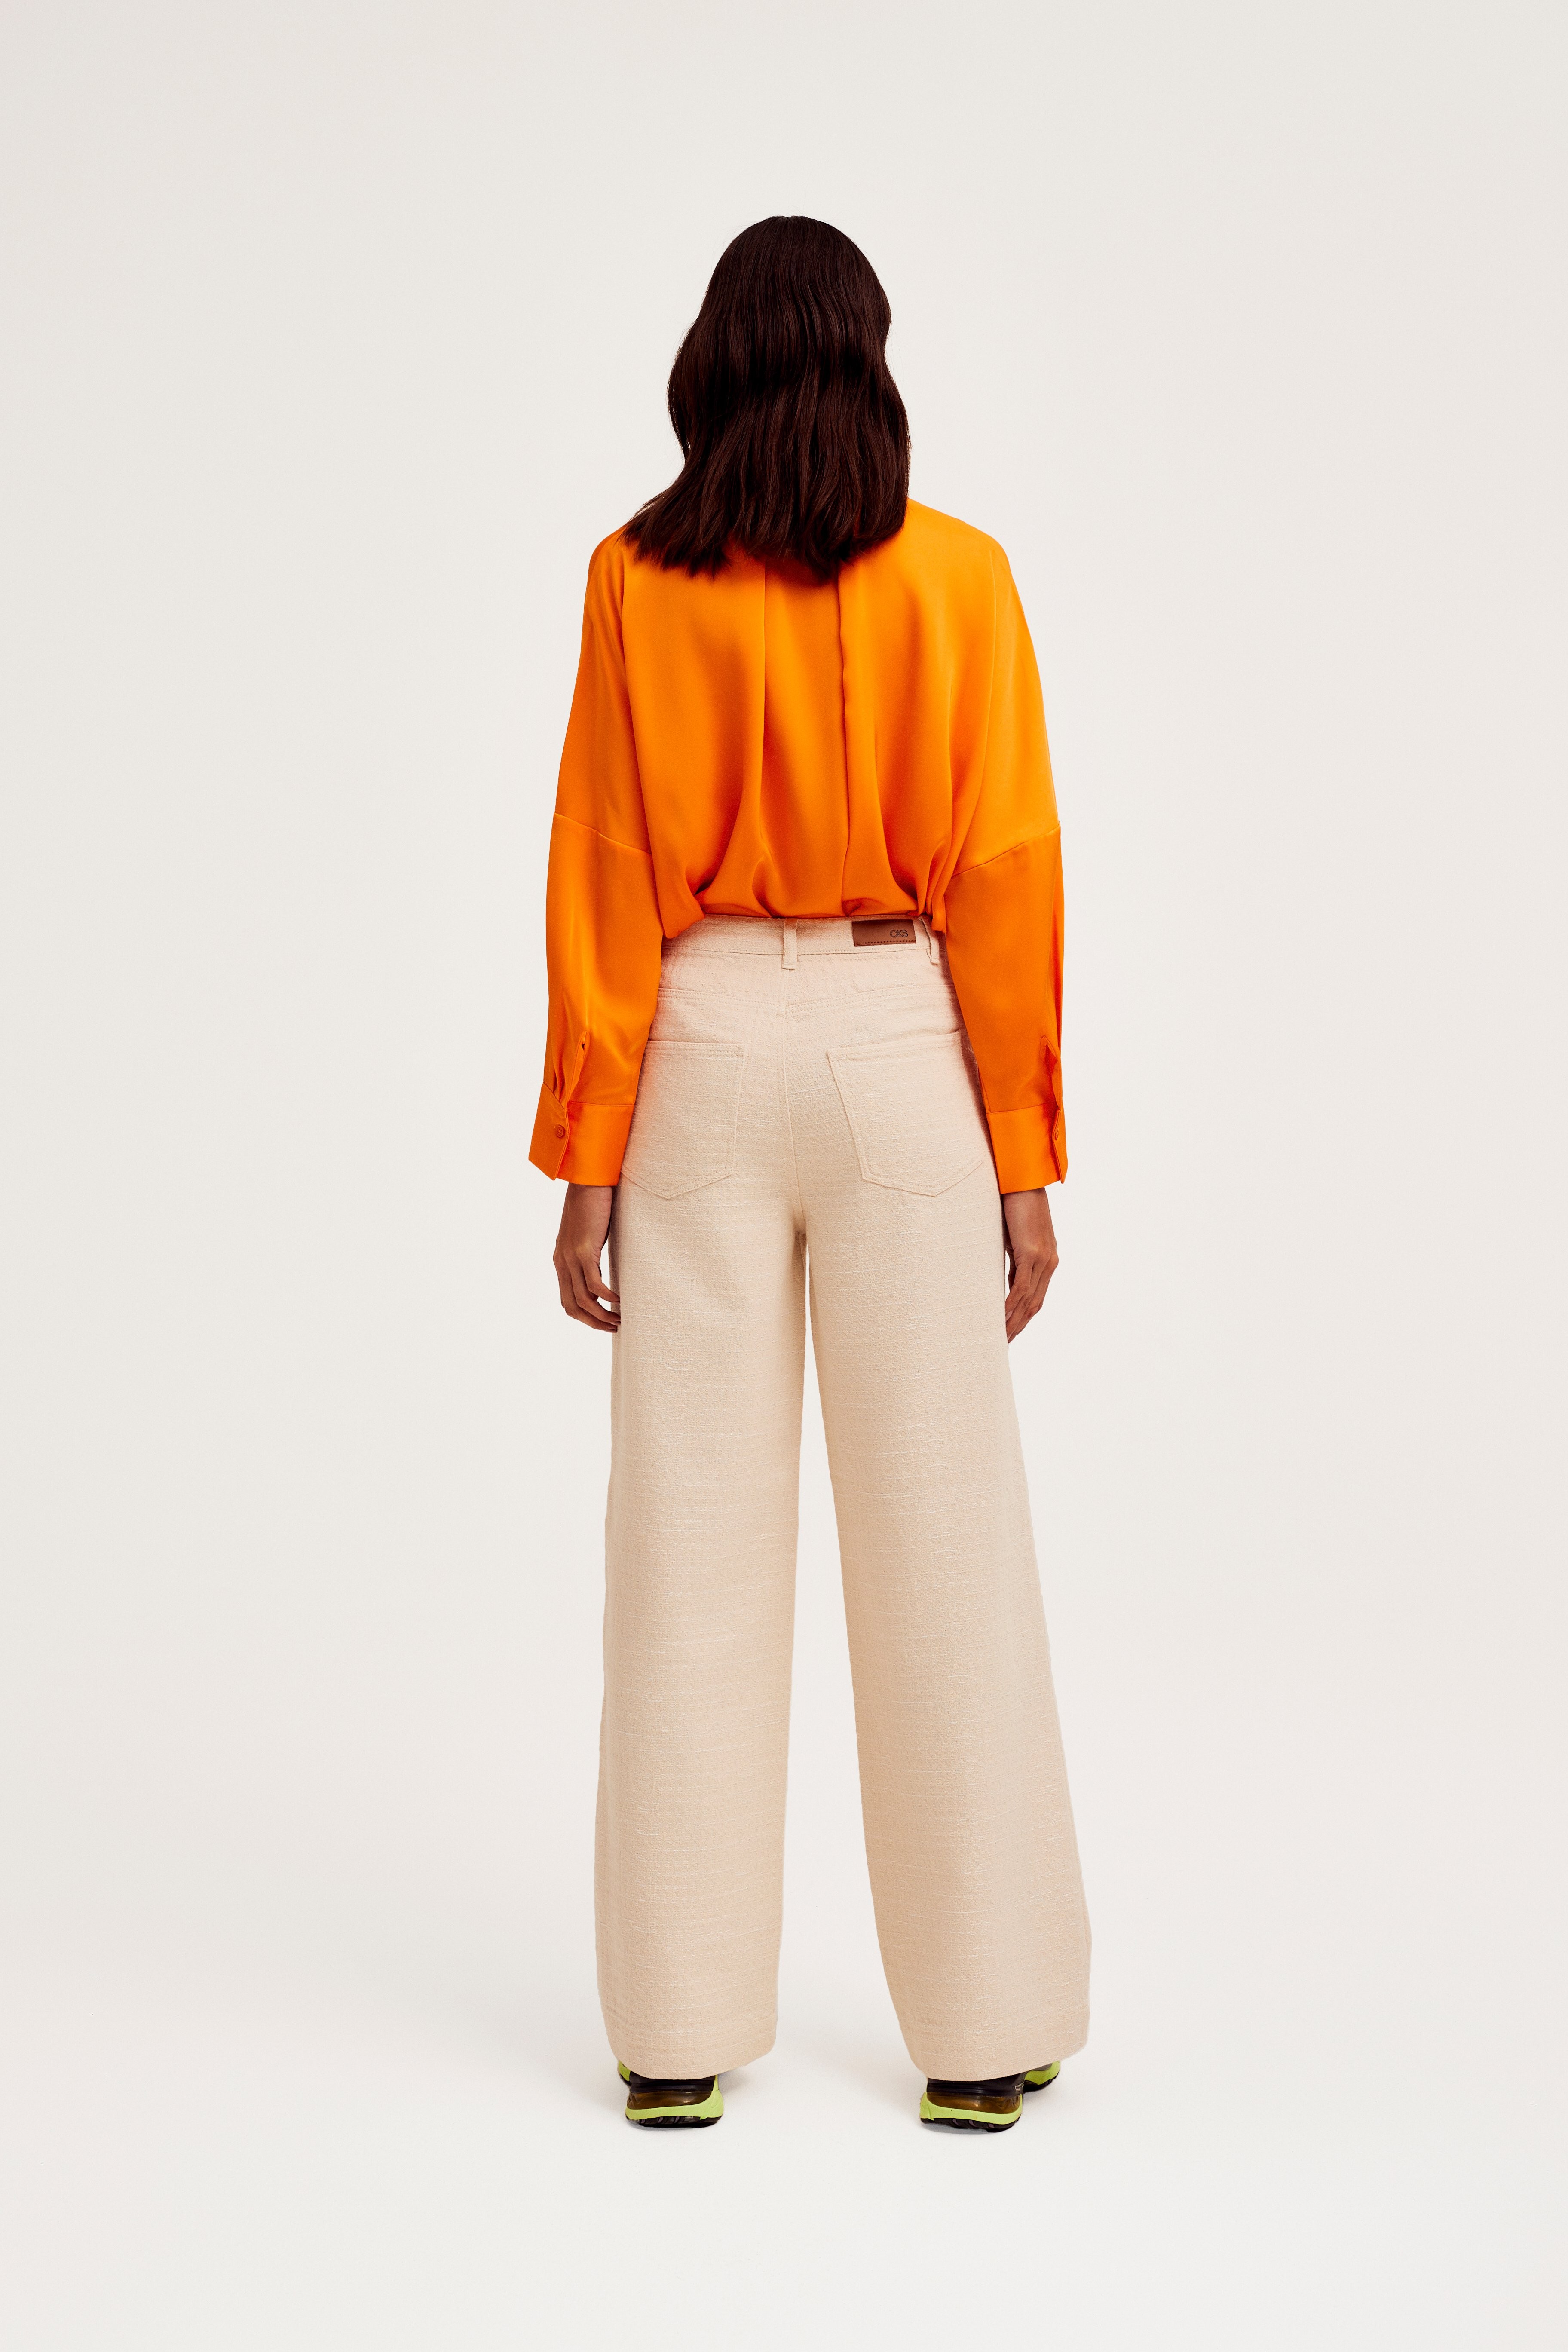 CKS Dames - WAZNA - blouse lange mouwen - intens oranje